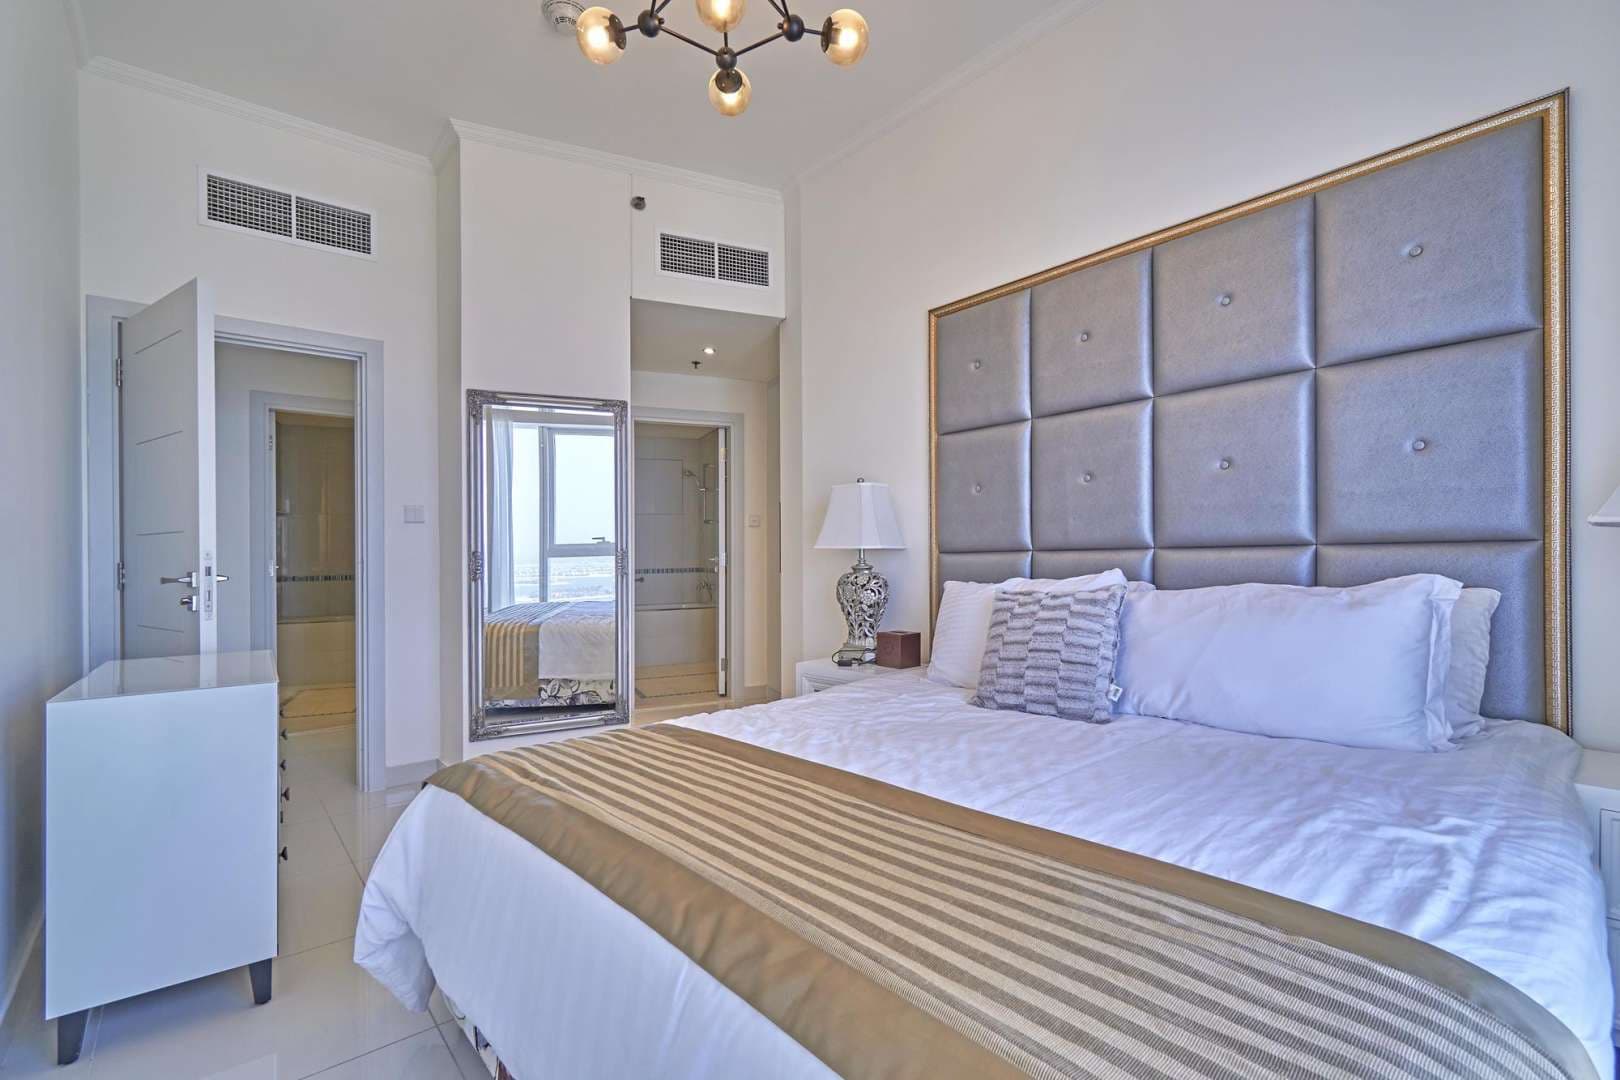 2 Bedroom Apartment For Rent Damac Heights Lp05785 2deb9980a0d5d000.jpg